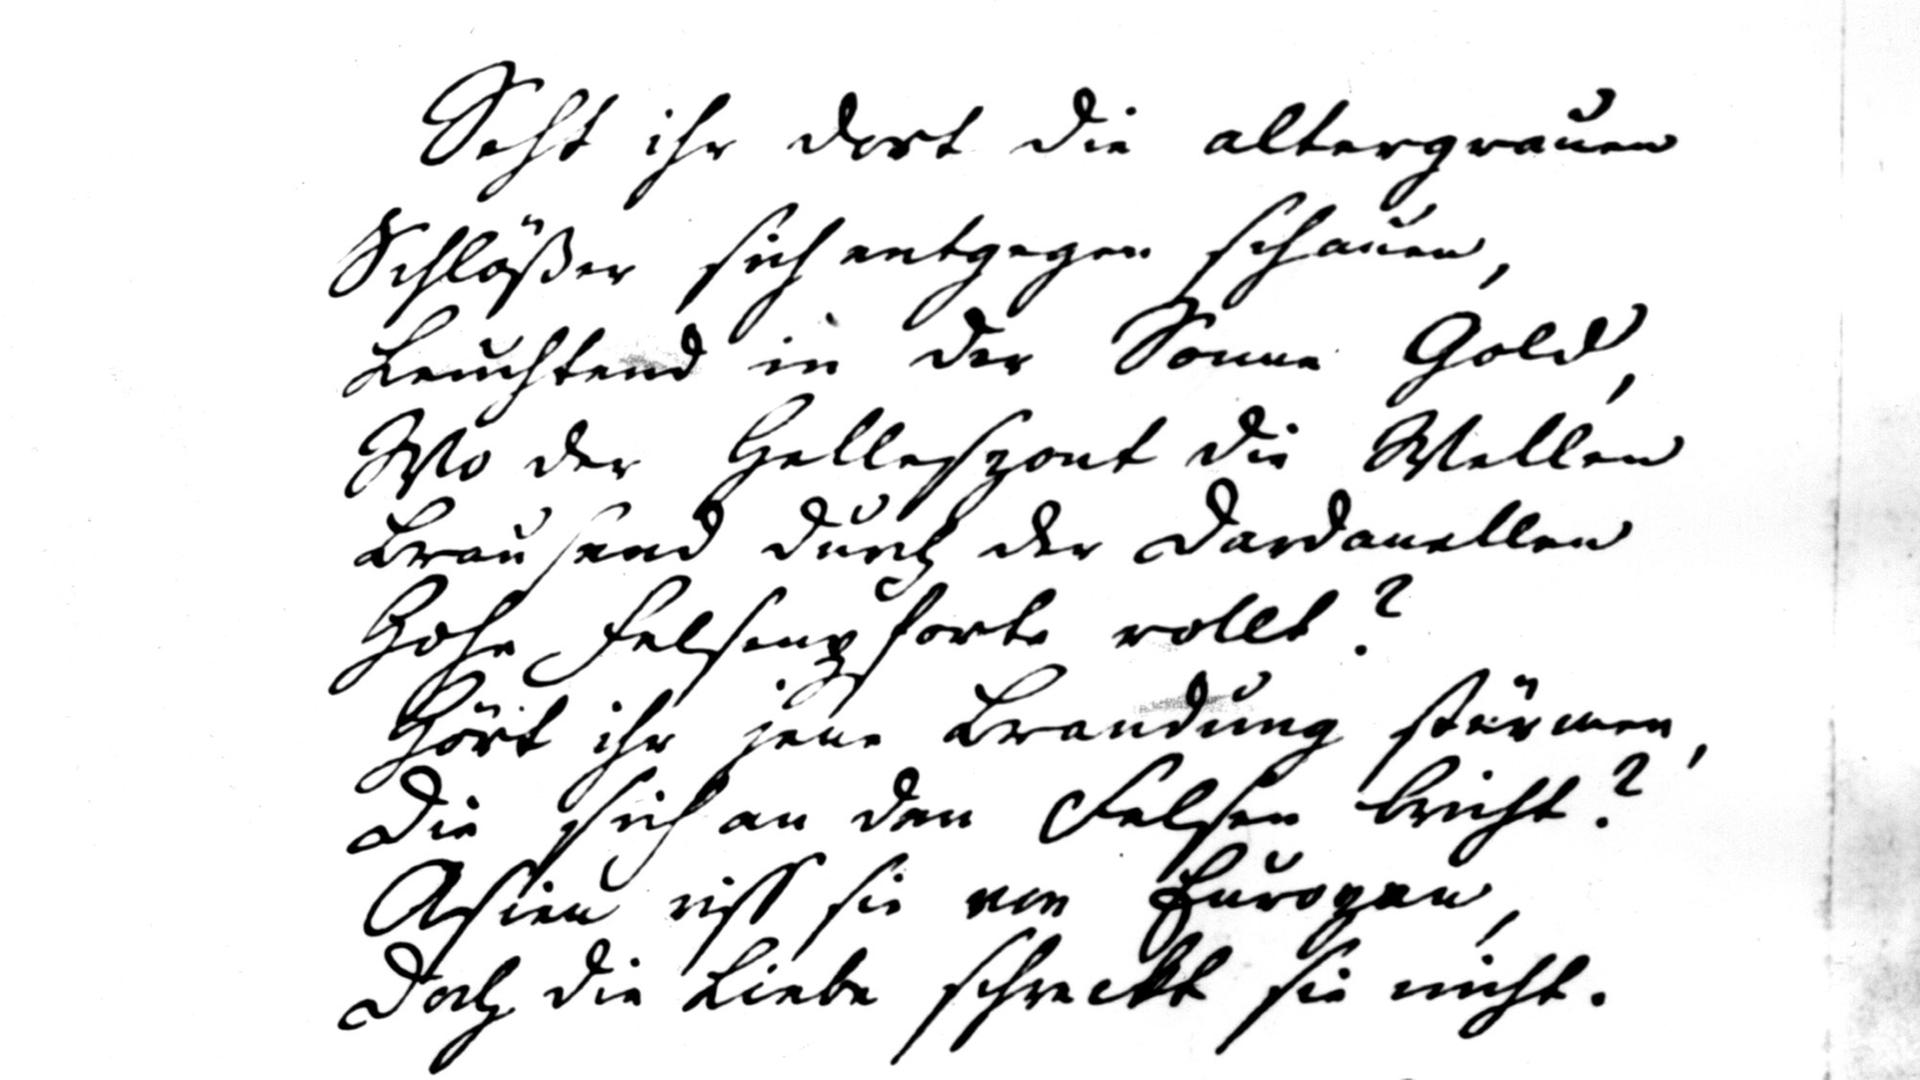 Die ersten Verse der Ballade "Hero und Leander" in der Handschrift von Friedrich Schiller